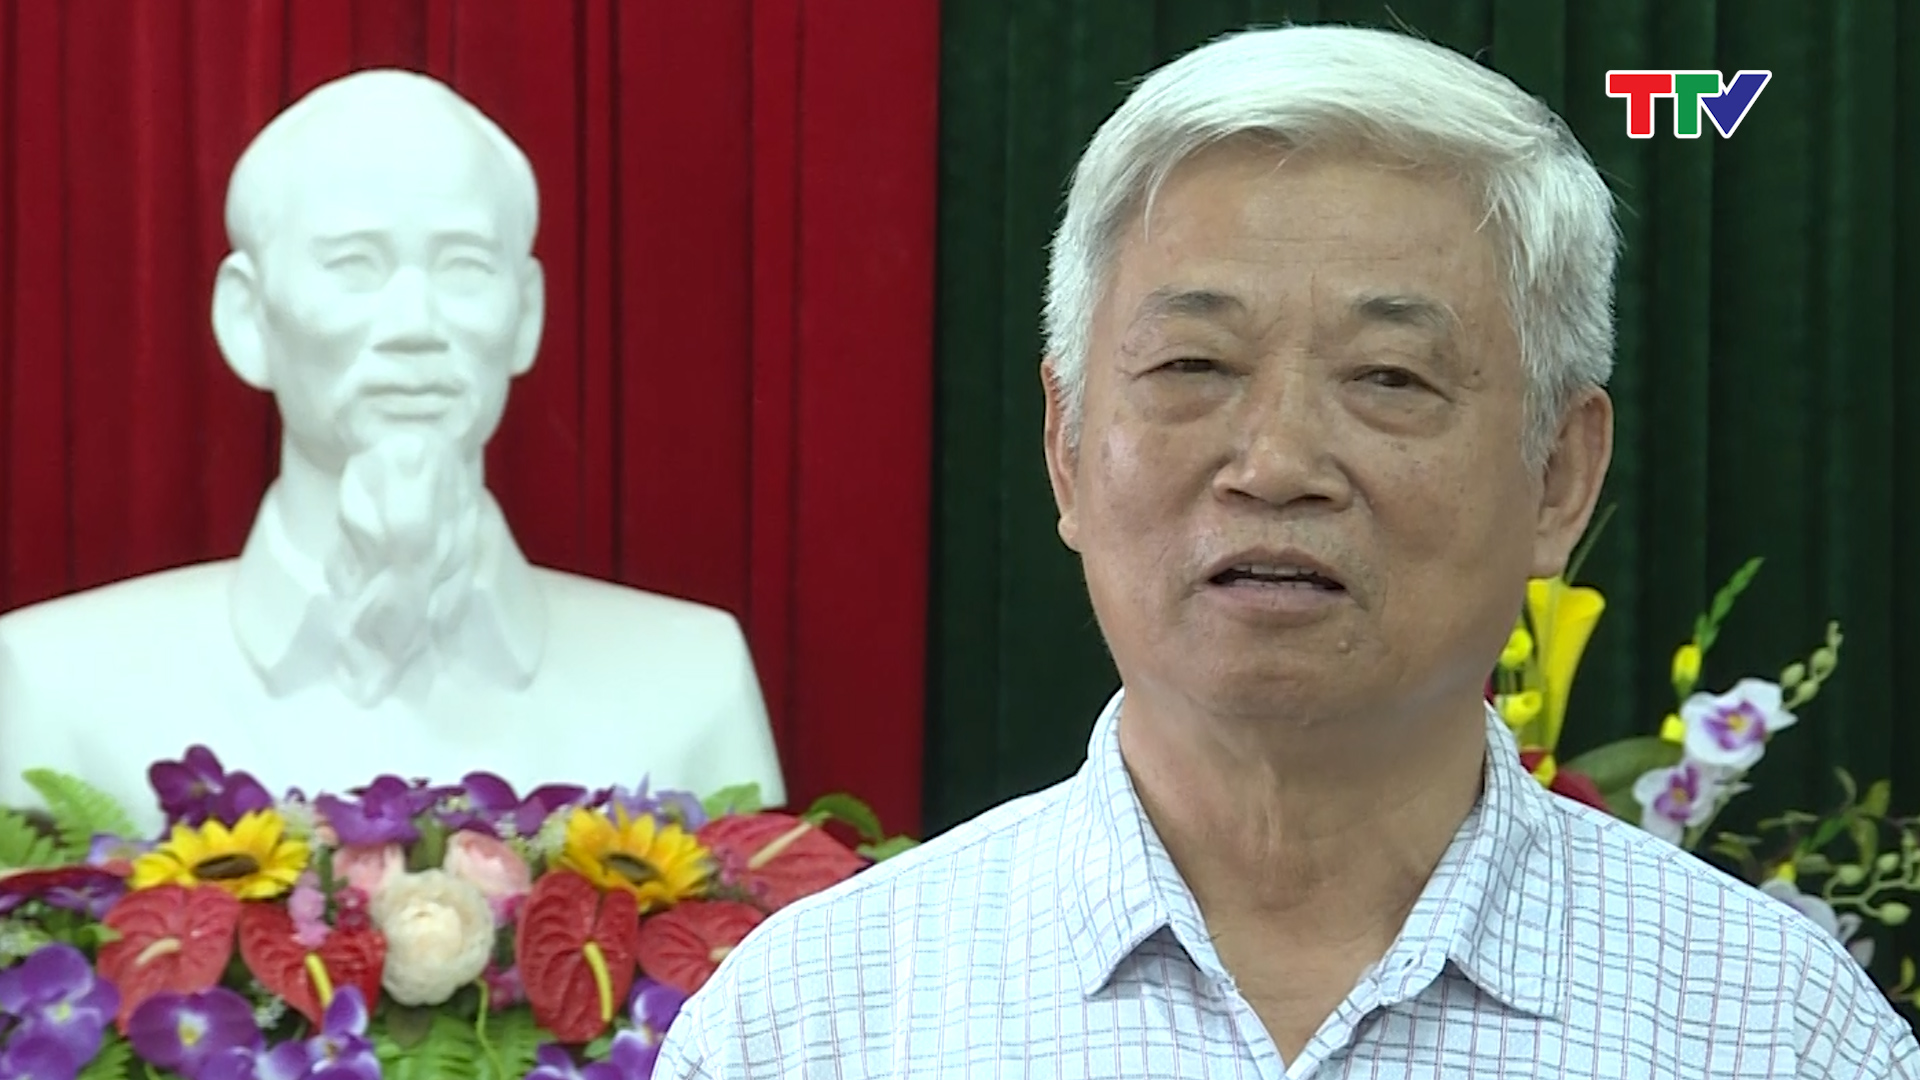  Ông Lê Trung Sơn – Chủ tịch Hội cựu TNXP tỉnh Thanh Hóa: “Hiện nay vẫn còn một số khó khăn trong giải quyết chế độ cho TNXP, chủ yếu là do giấy tờ bị thất lạc, việc chứng minh đơn vị, người tham gia tình nguyện, xung kích khó”